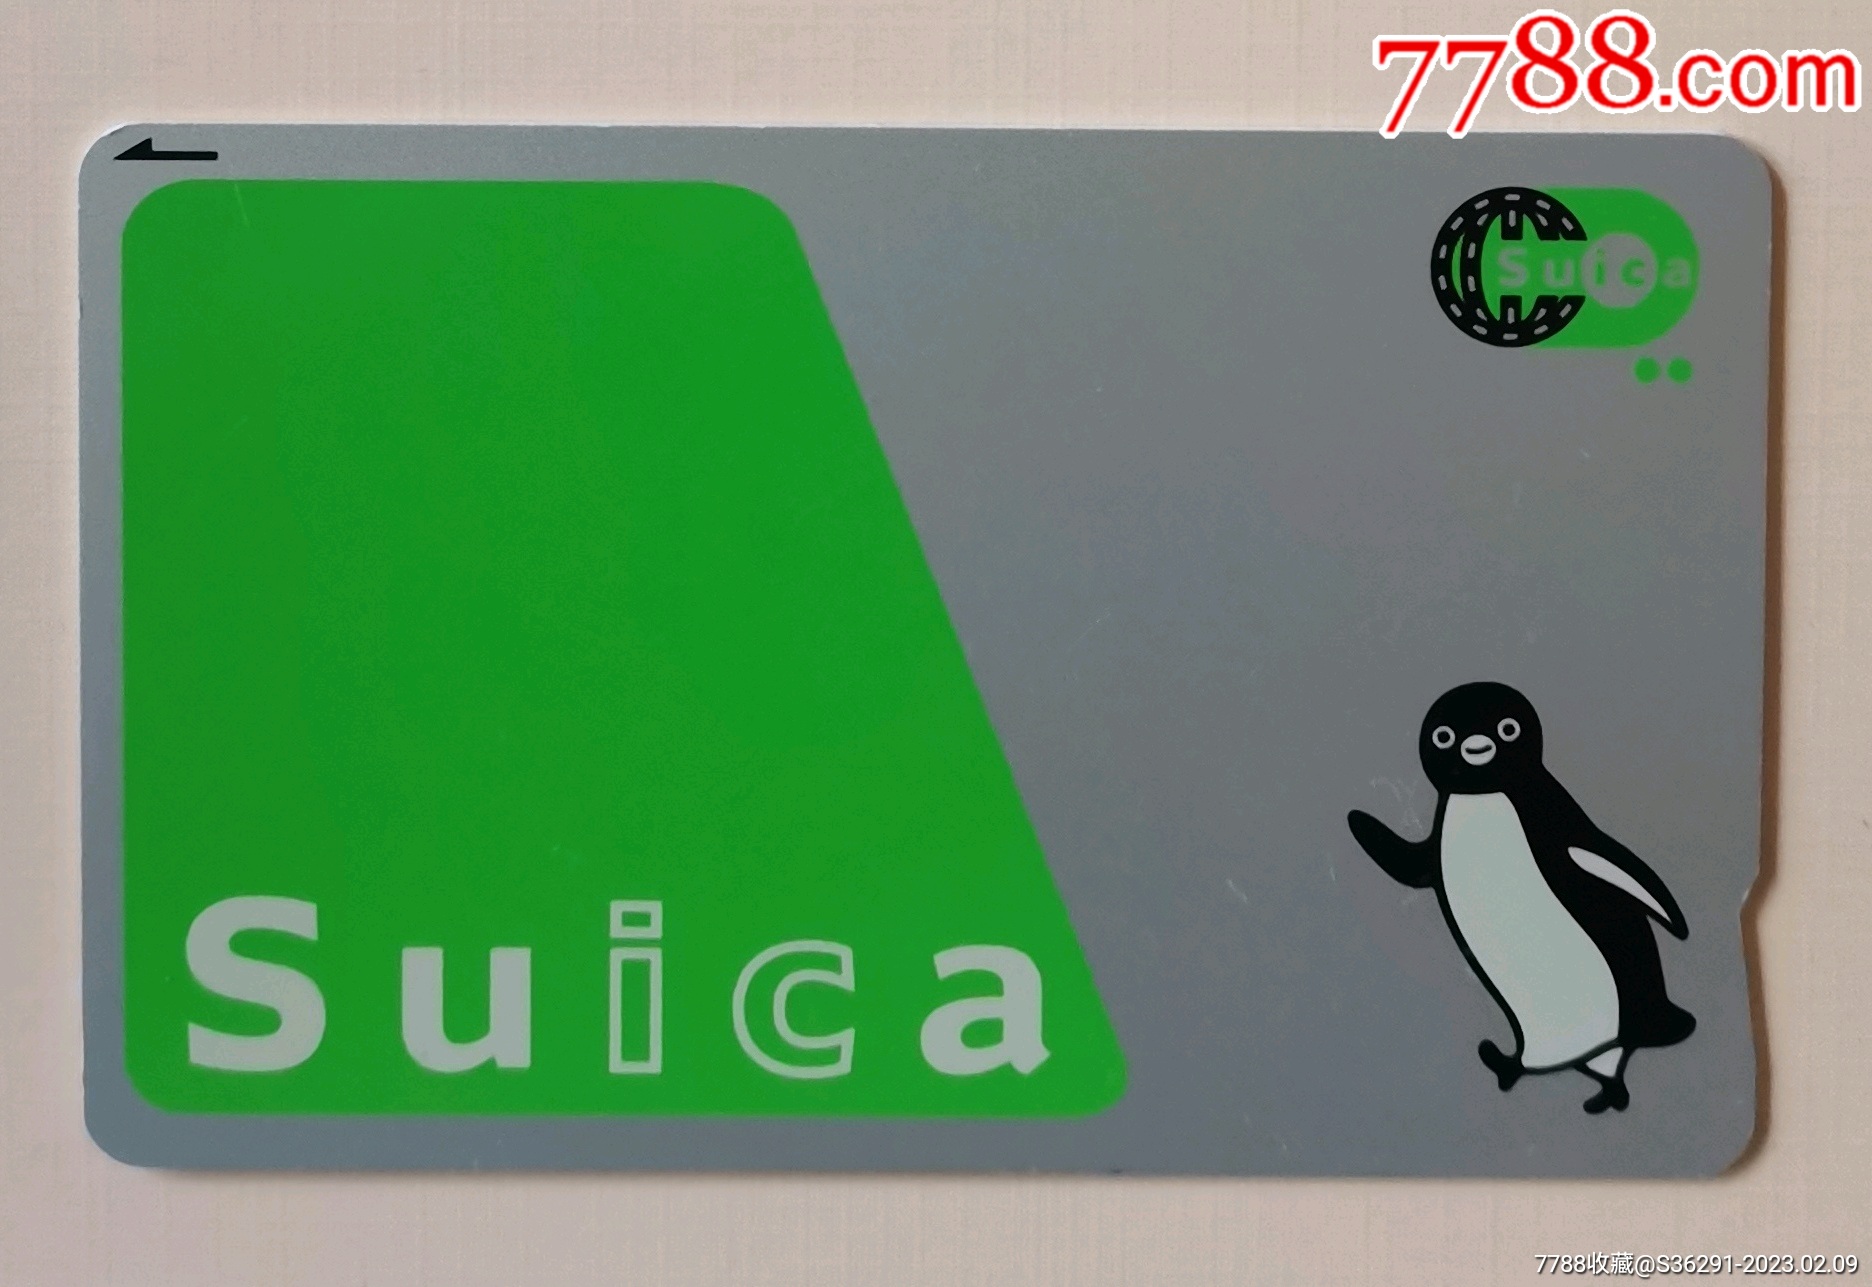 日本西瓜卡現貨 SUICA 日本東京交通卡 Japan Transportation Card [全新] 日本直送, 興趣及遊戲, 旅行 ...